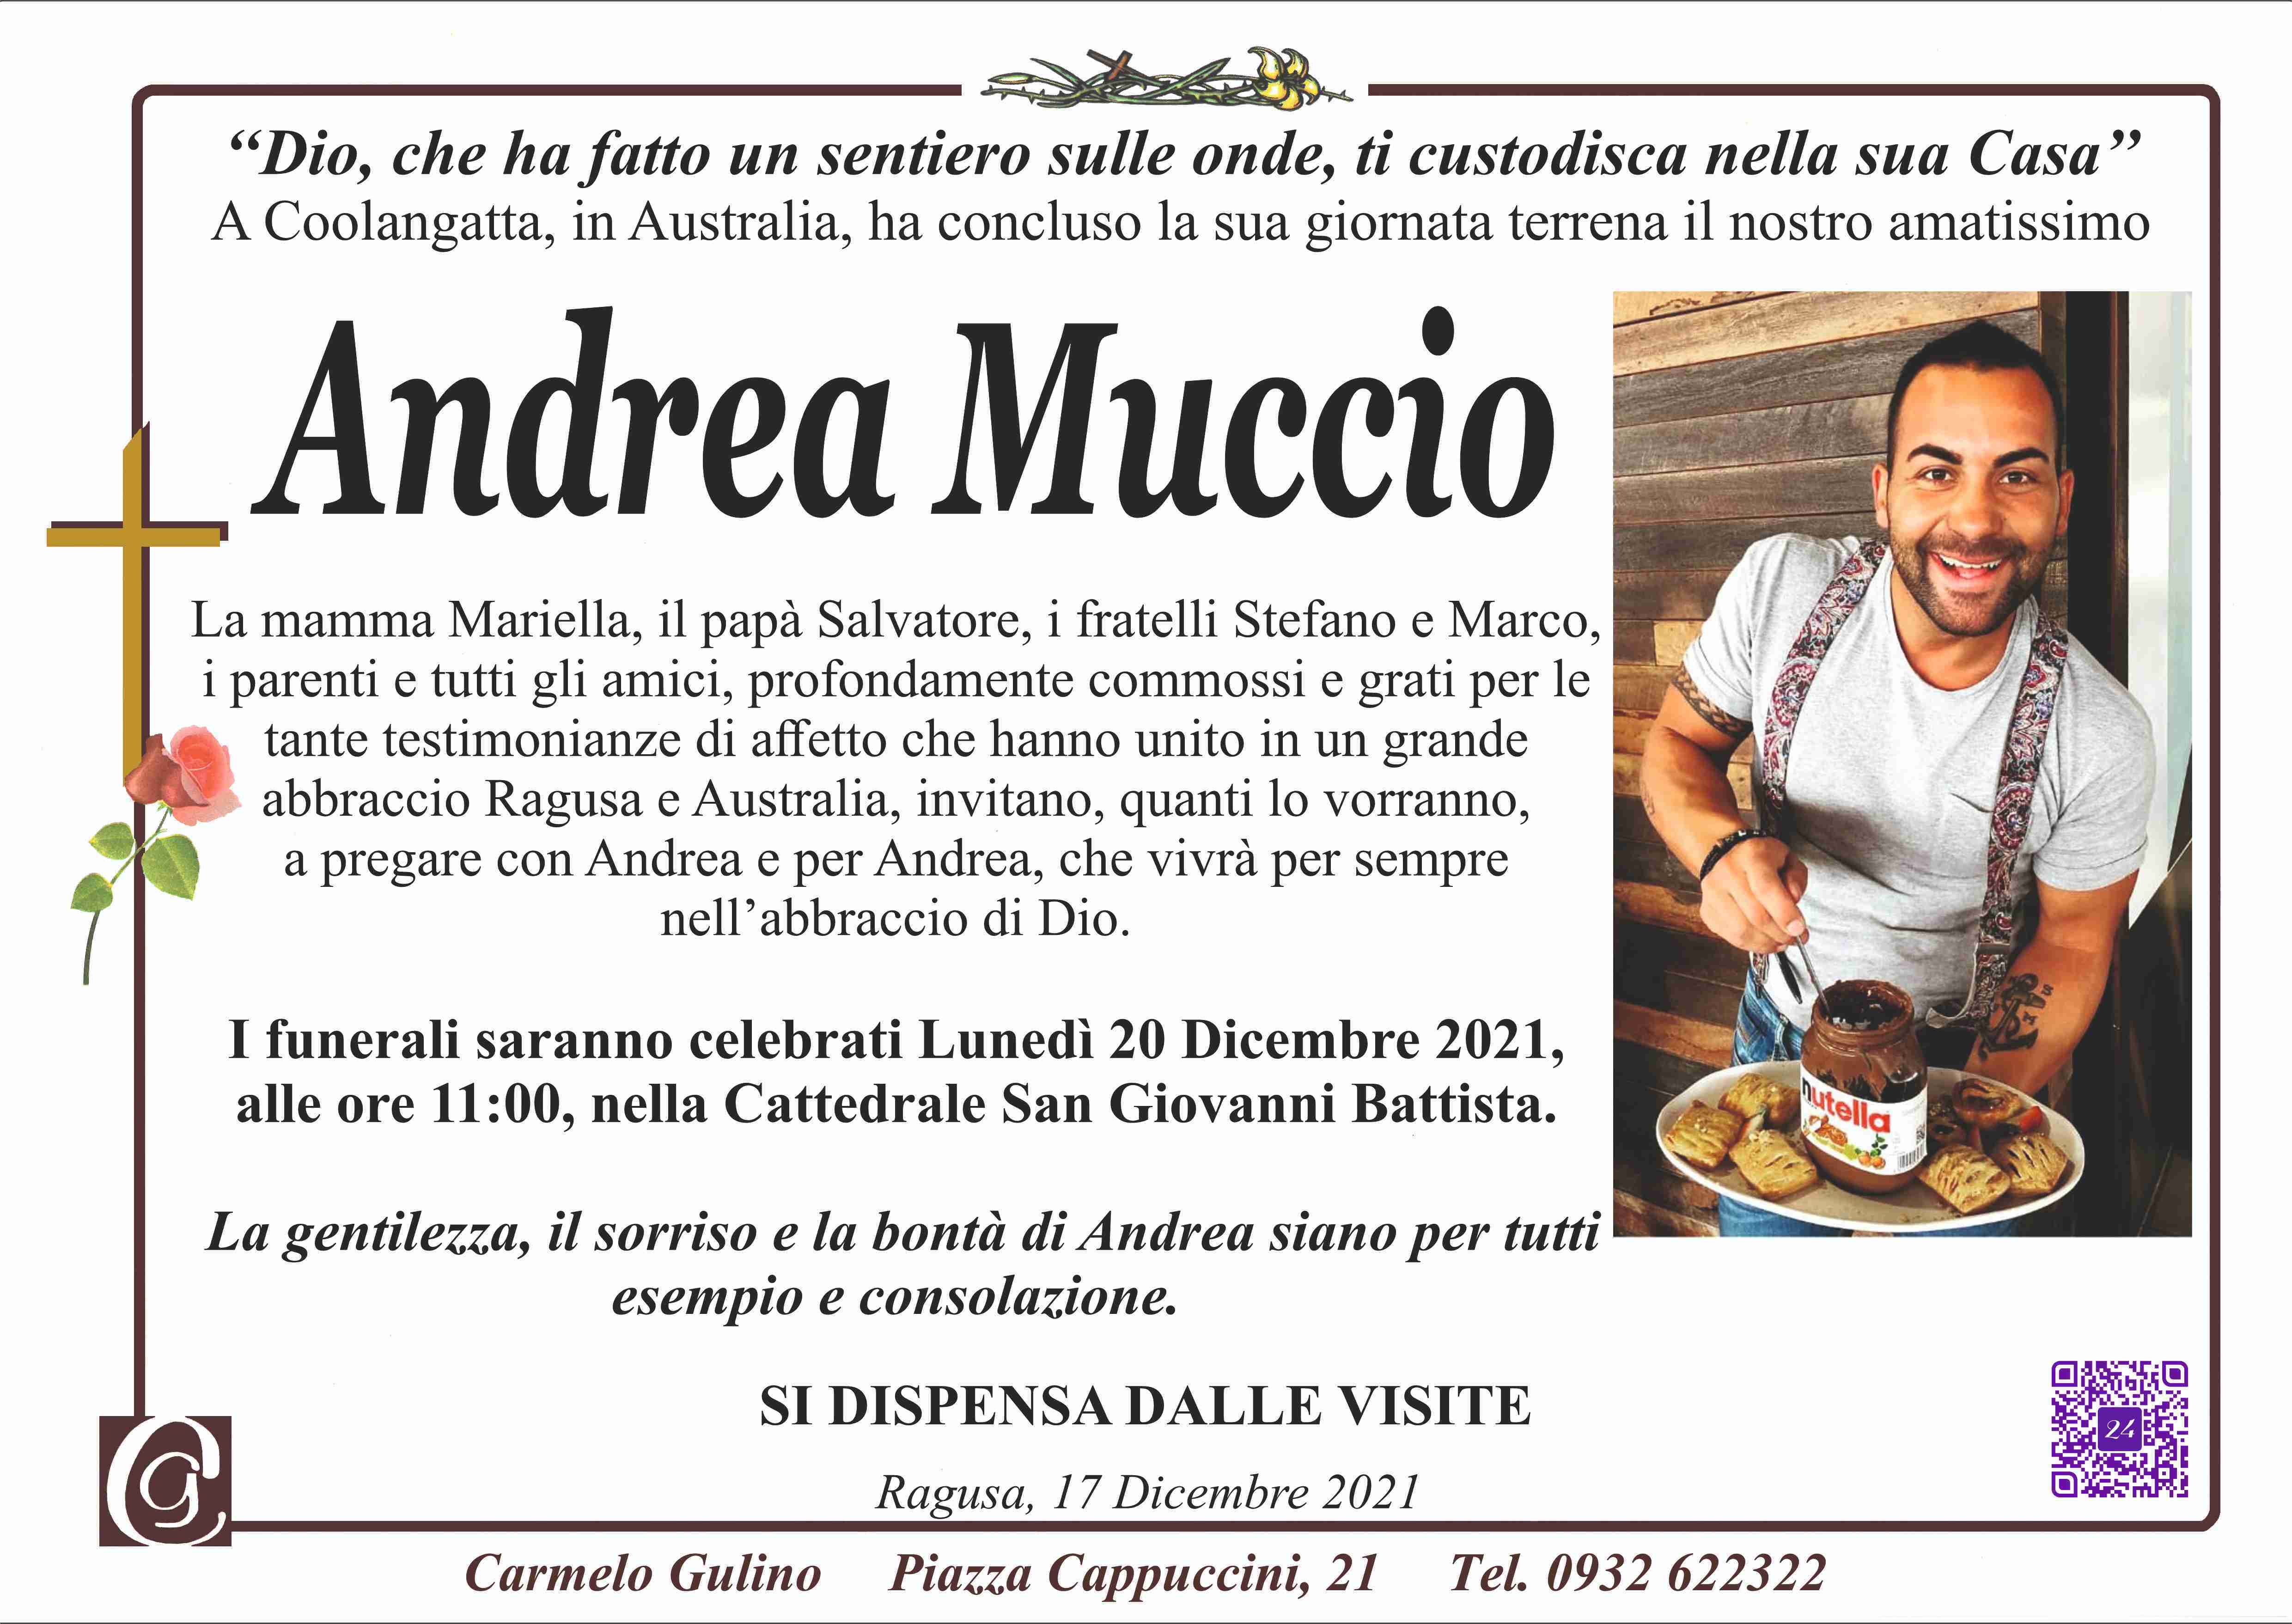 Andrea Muccio